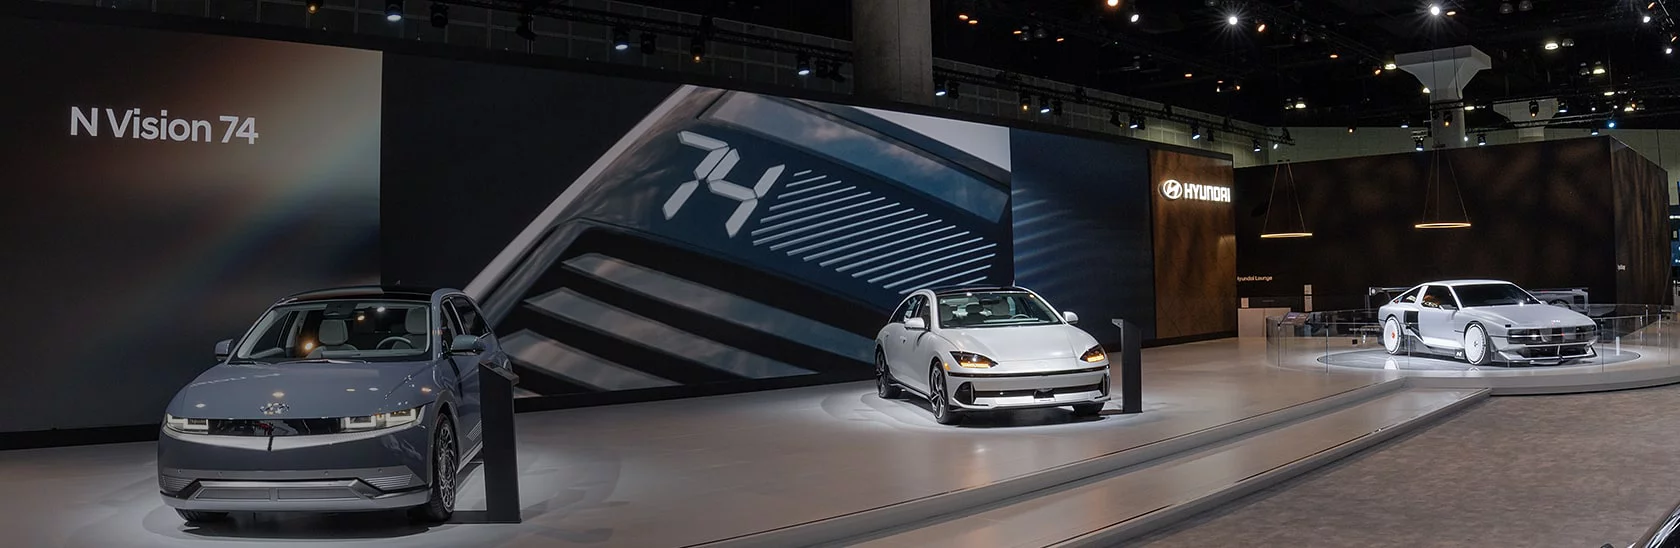 Hyundai en una exhibición de automóviles